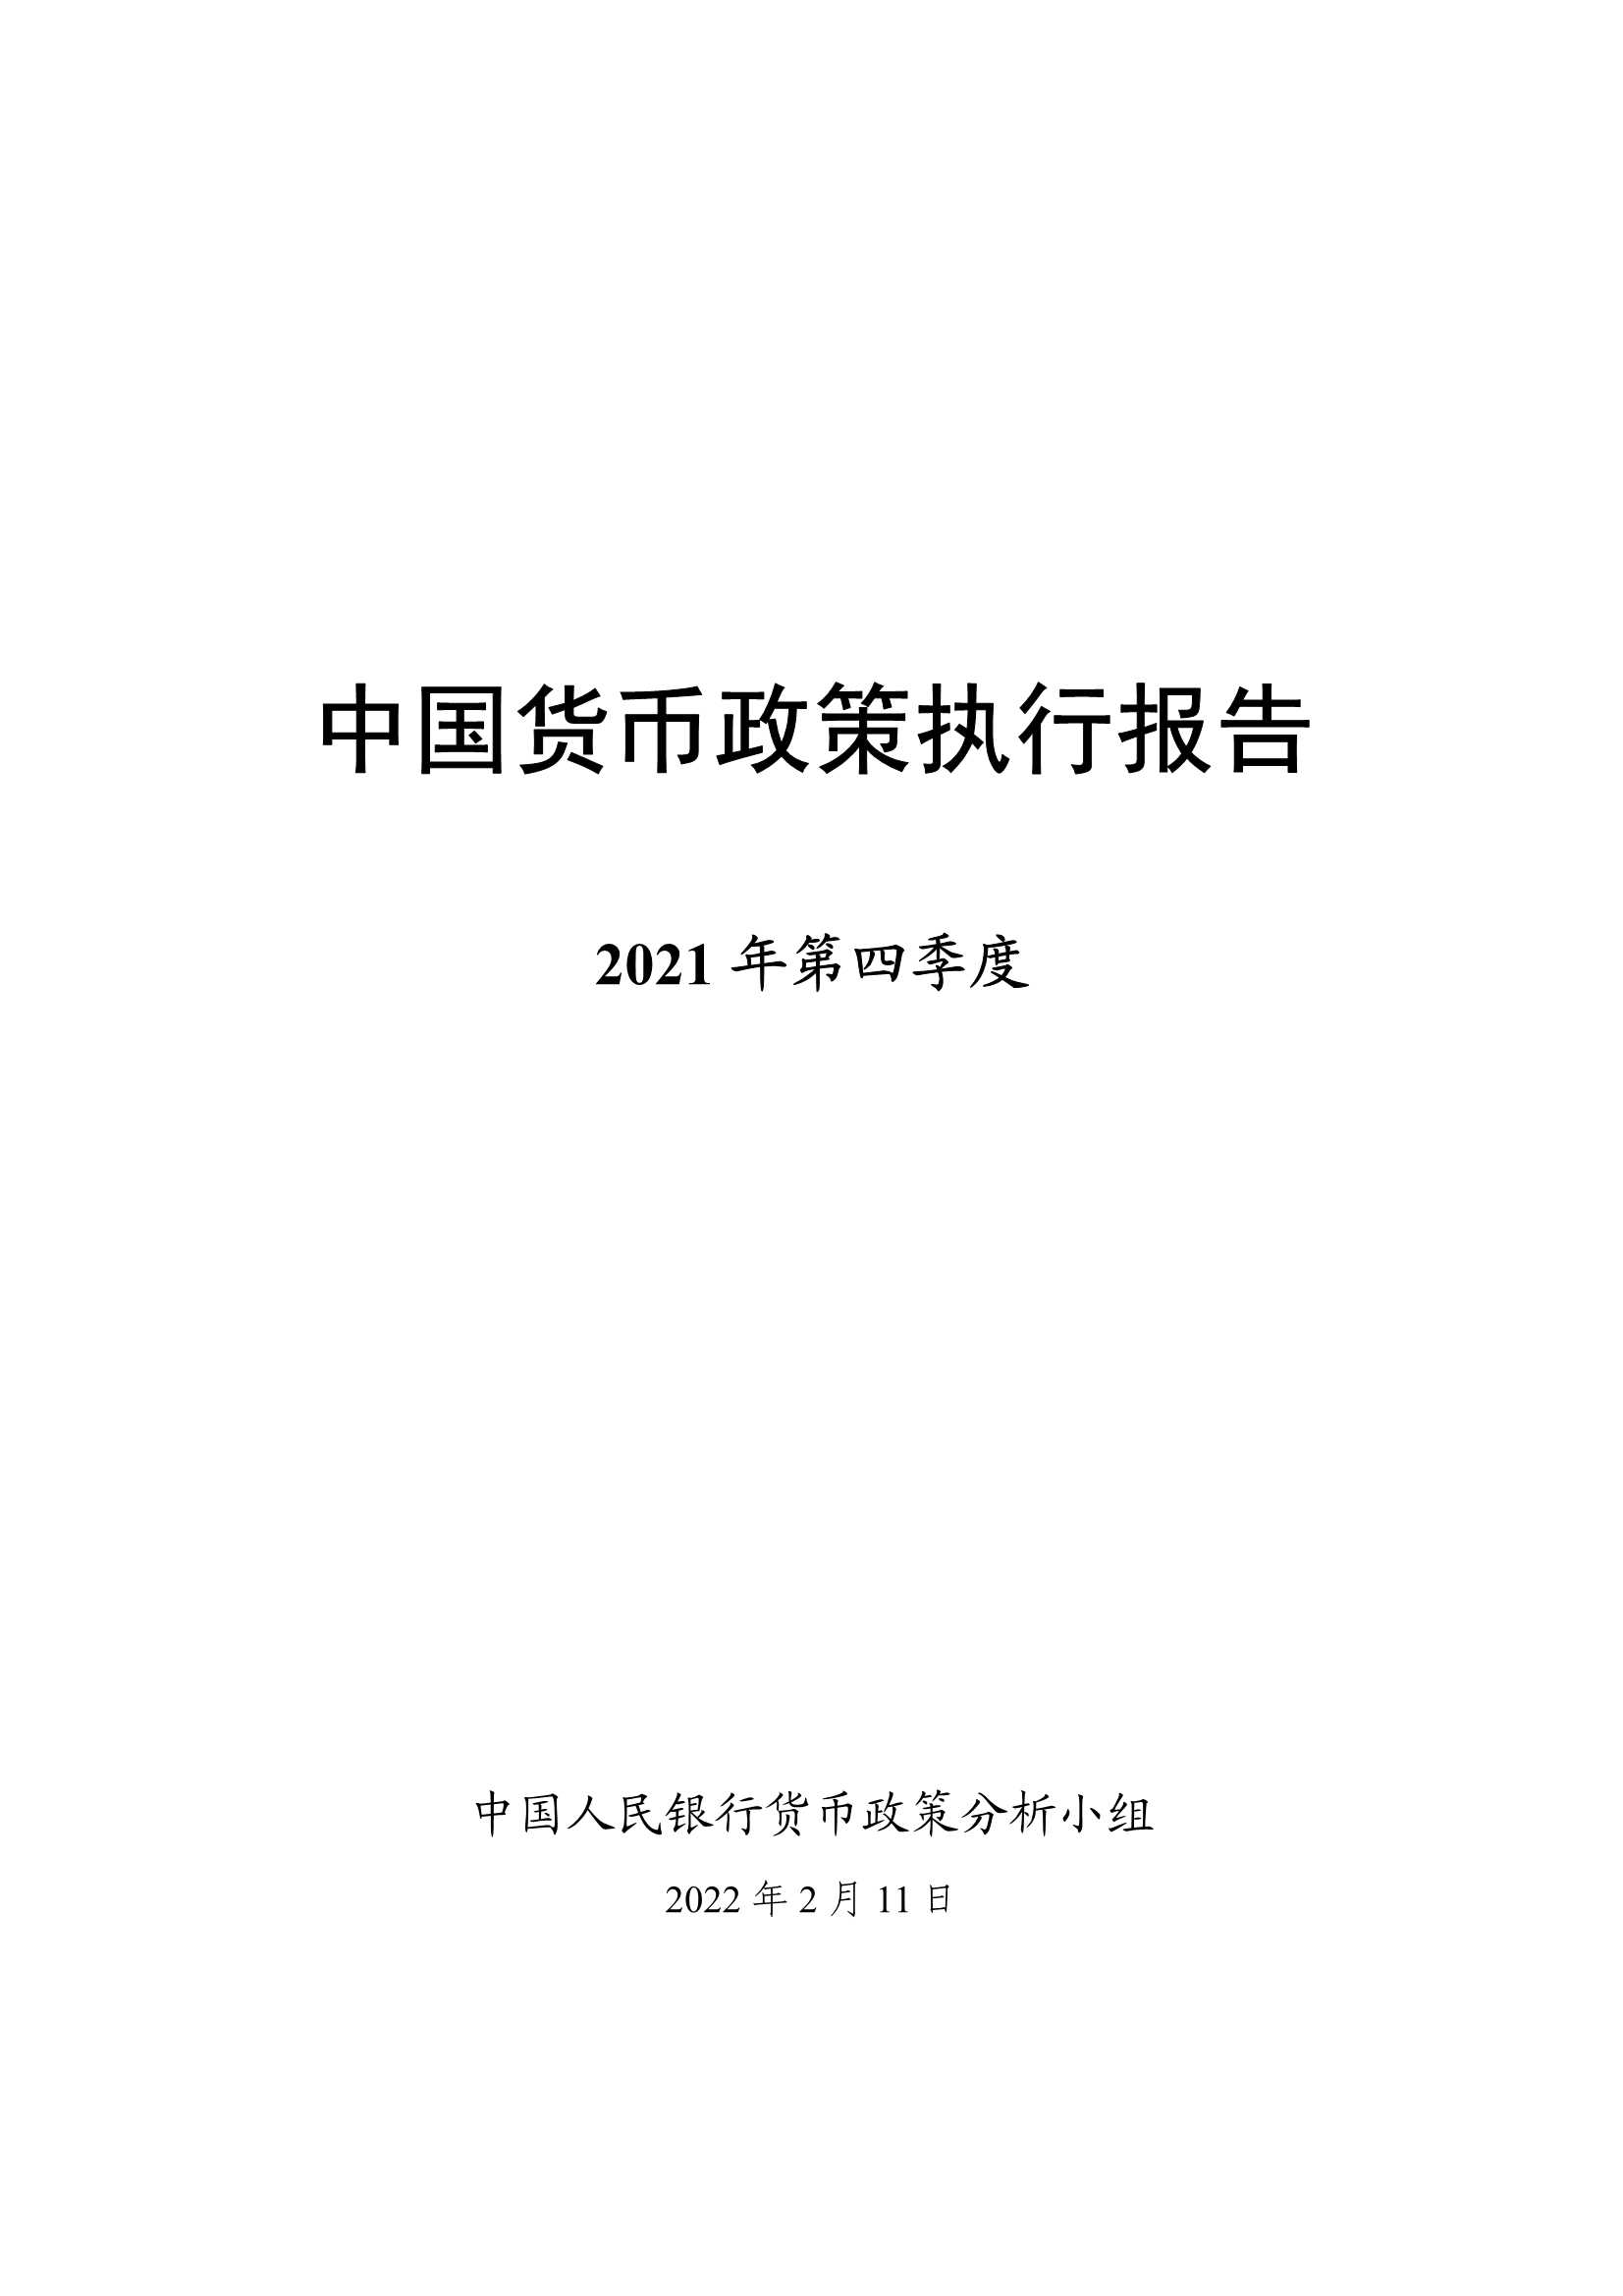 2021年第四季度中国货币政策执行报告-2022.02-66页